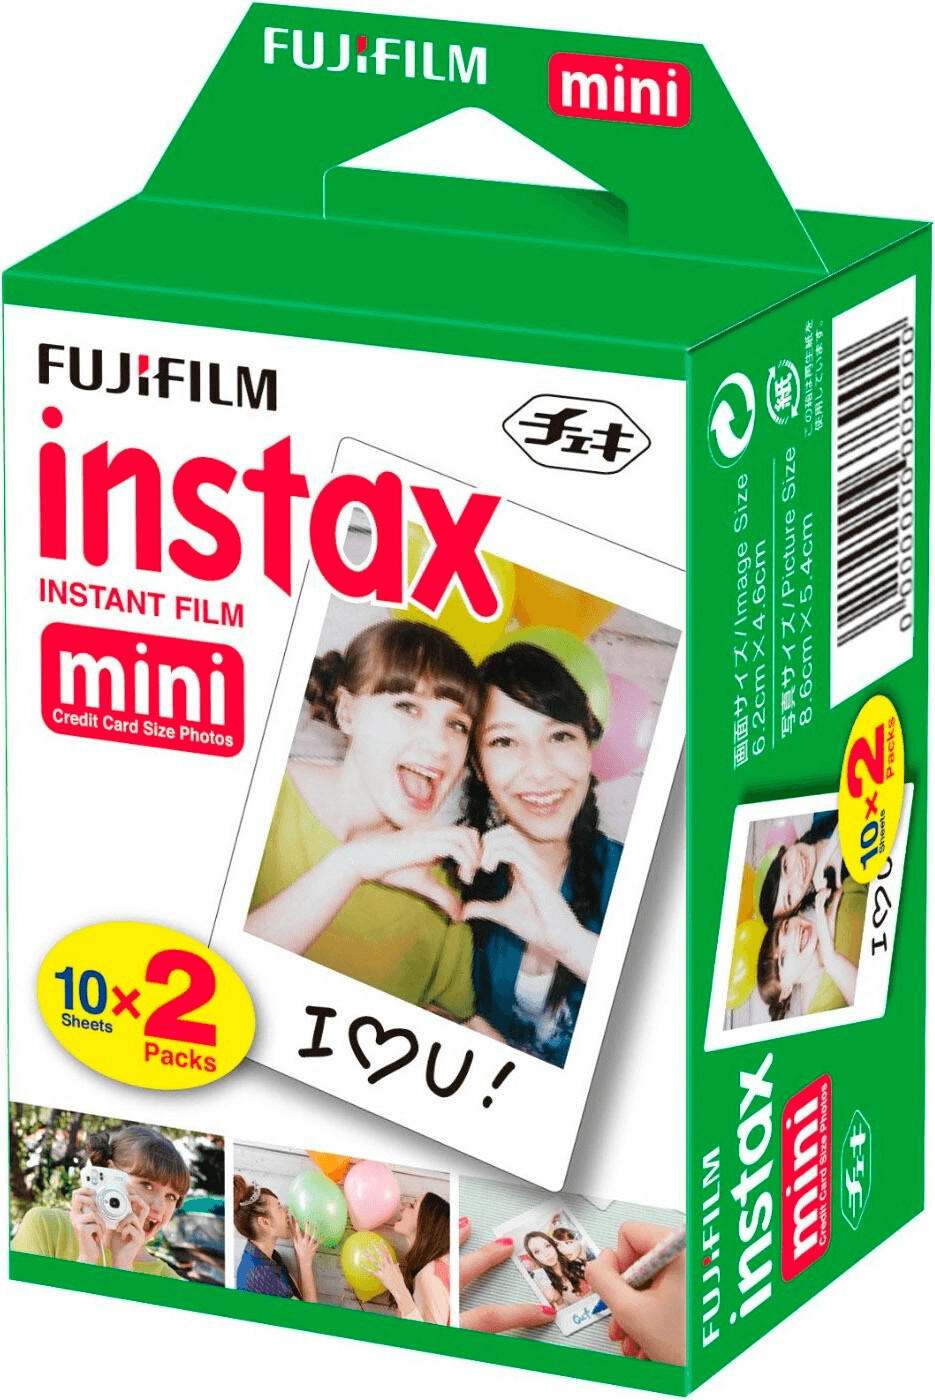 Fujifilm Instax mini